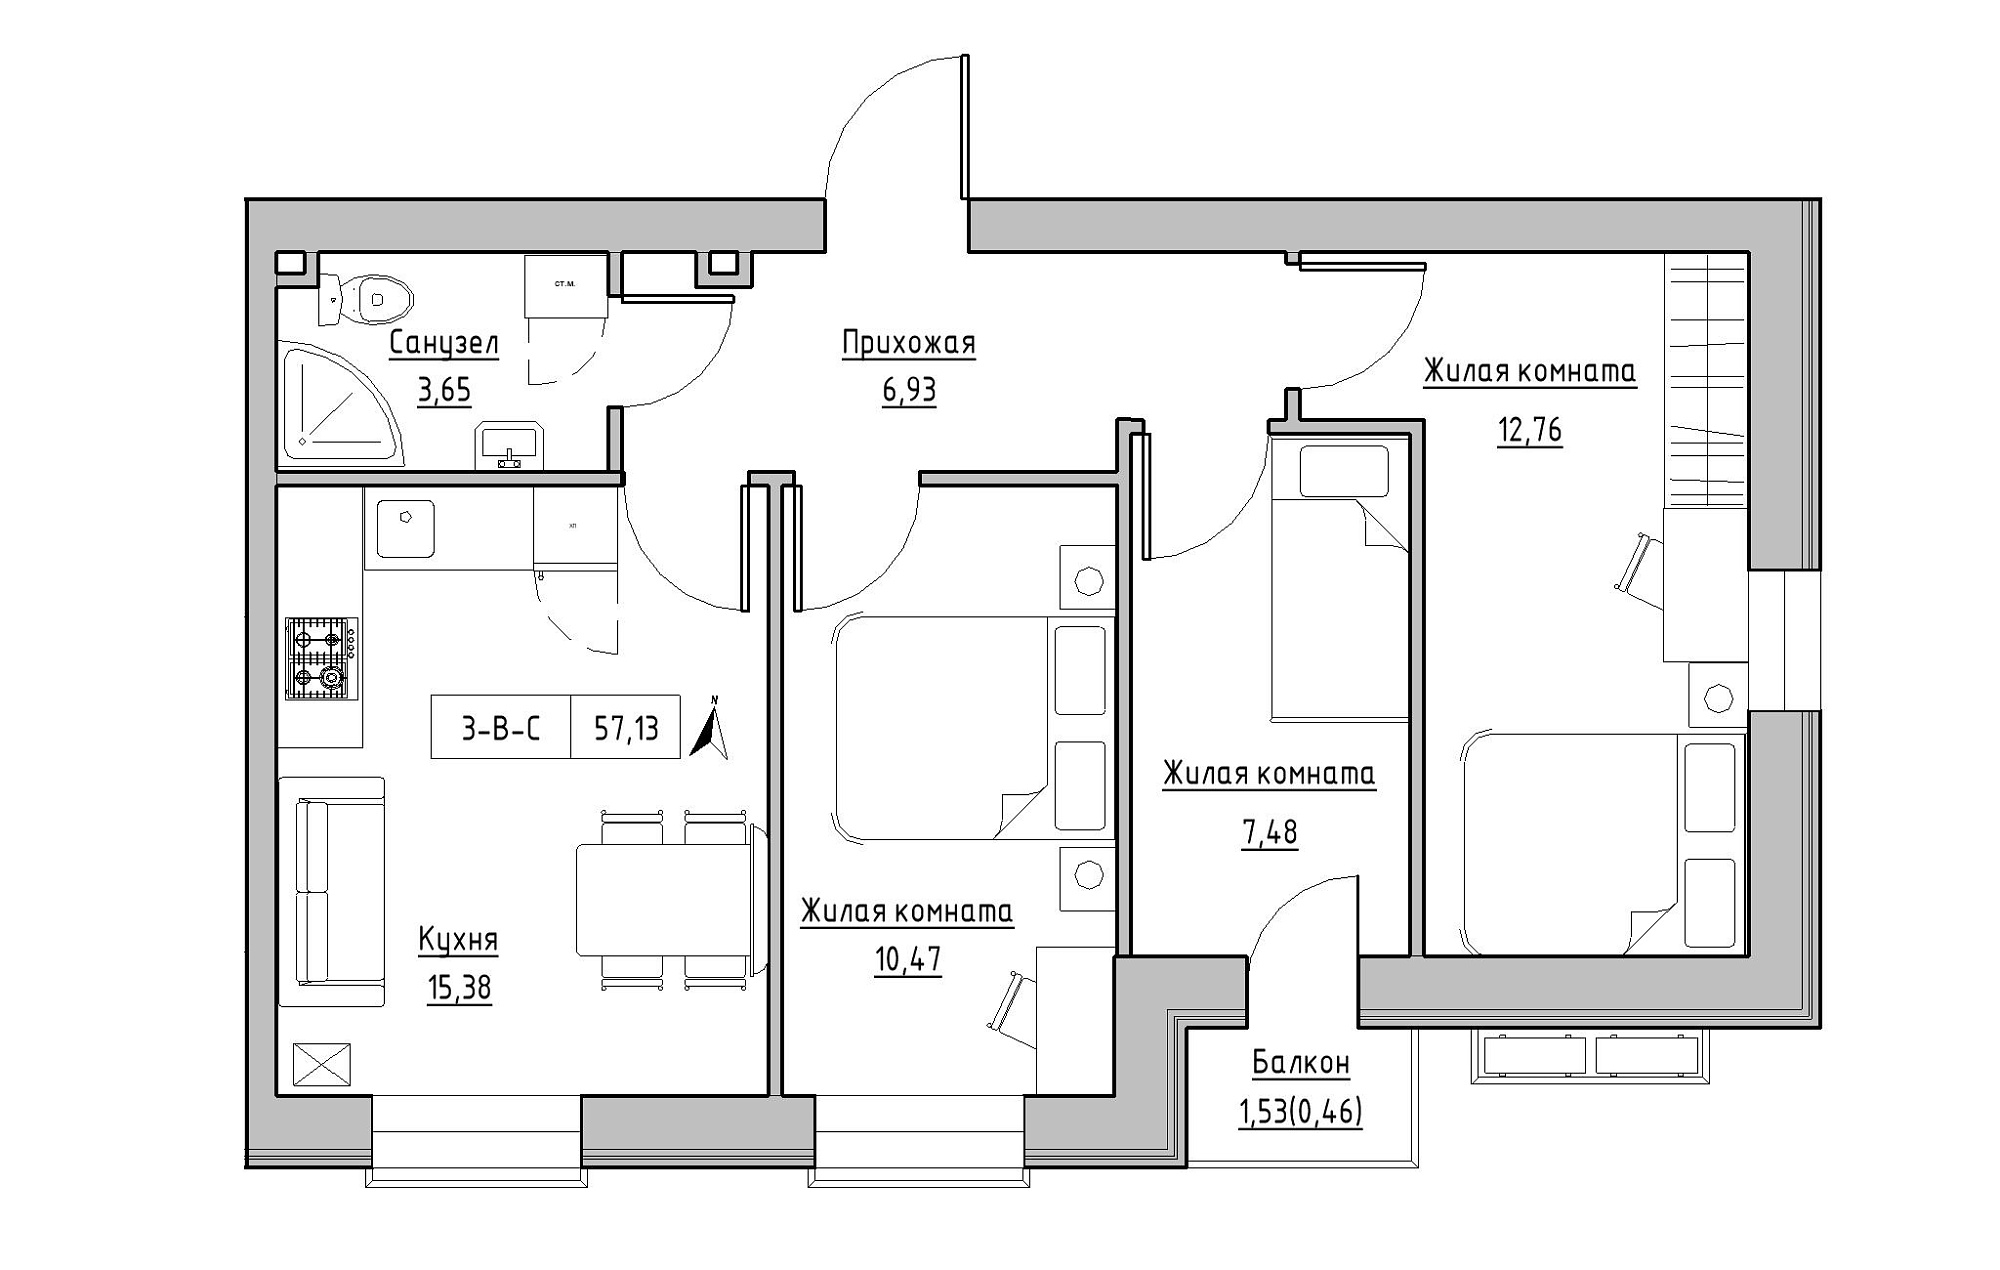 Планировка 3-к квартира площей 57.13м2, KS-019-03/0008.